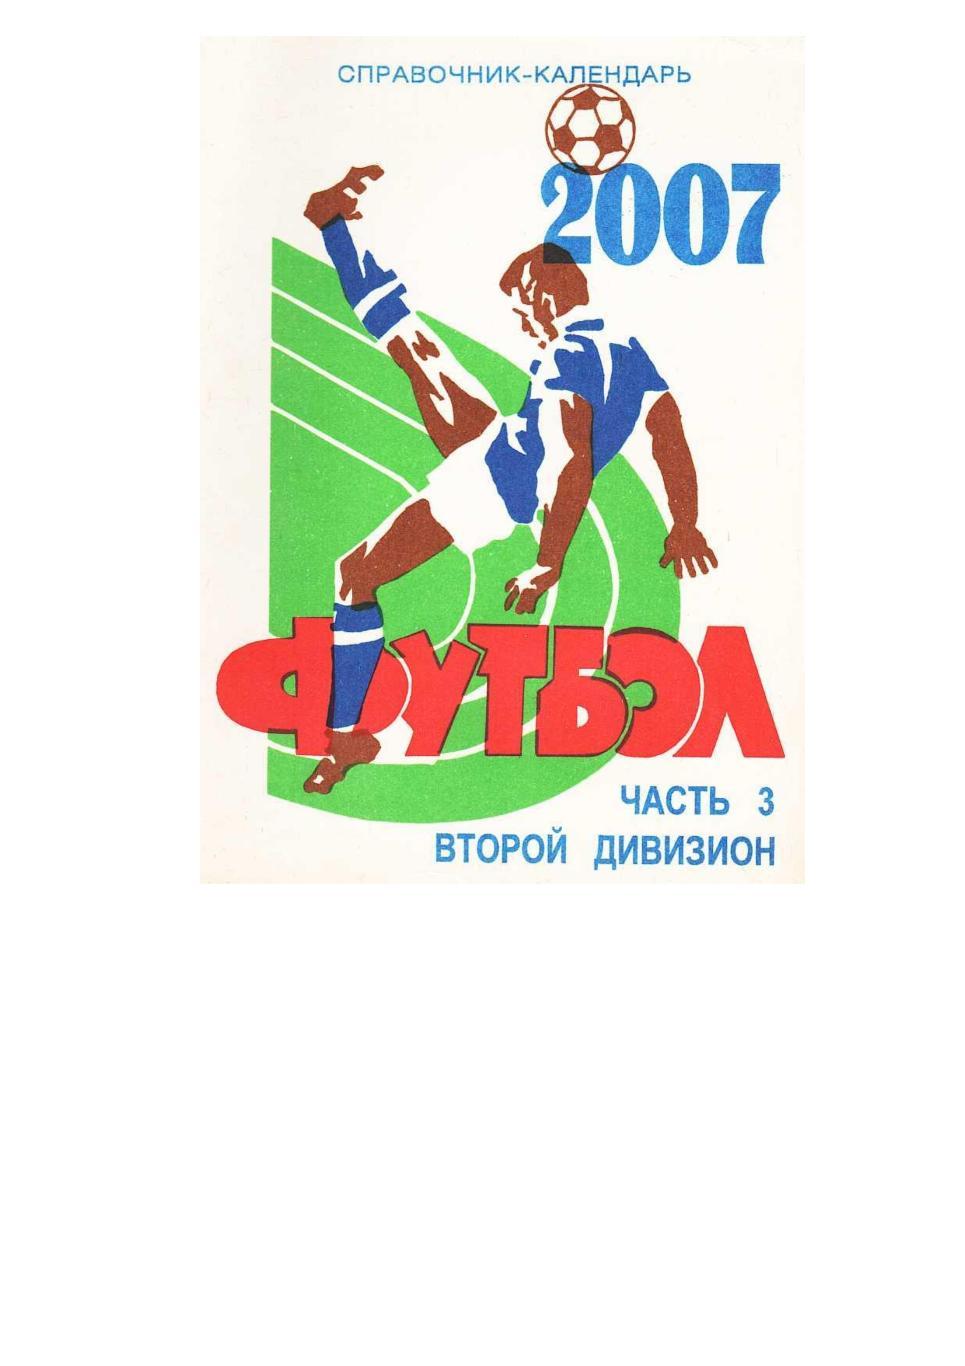 Футбол. 2007. Справочник-календарь. Часть 3. Второй дивизион.